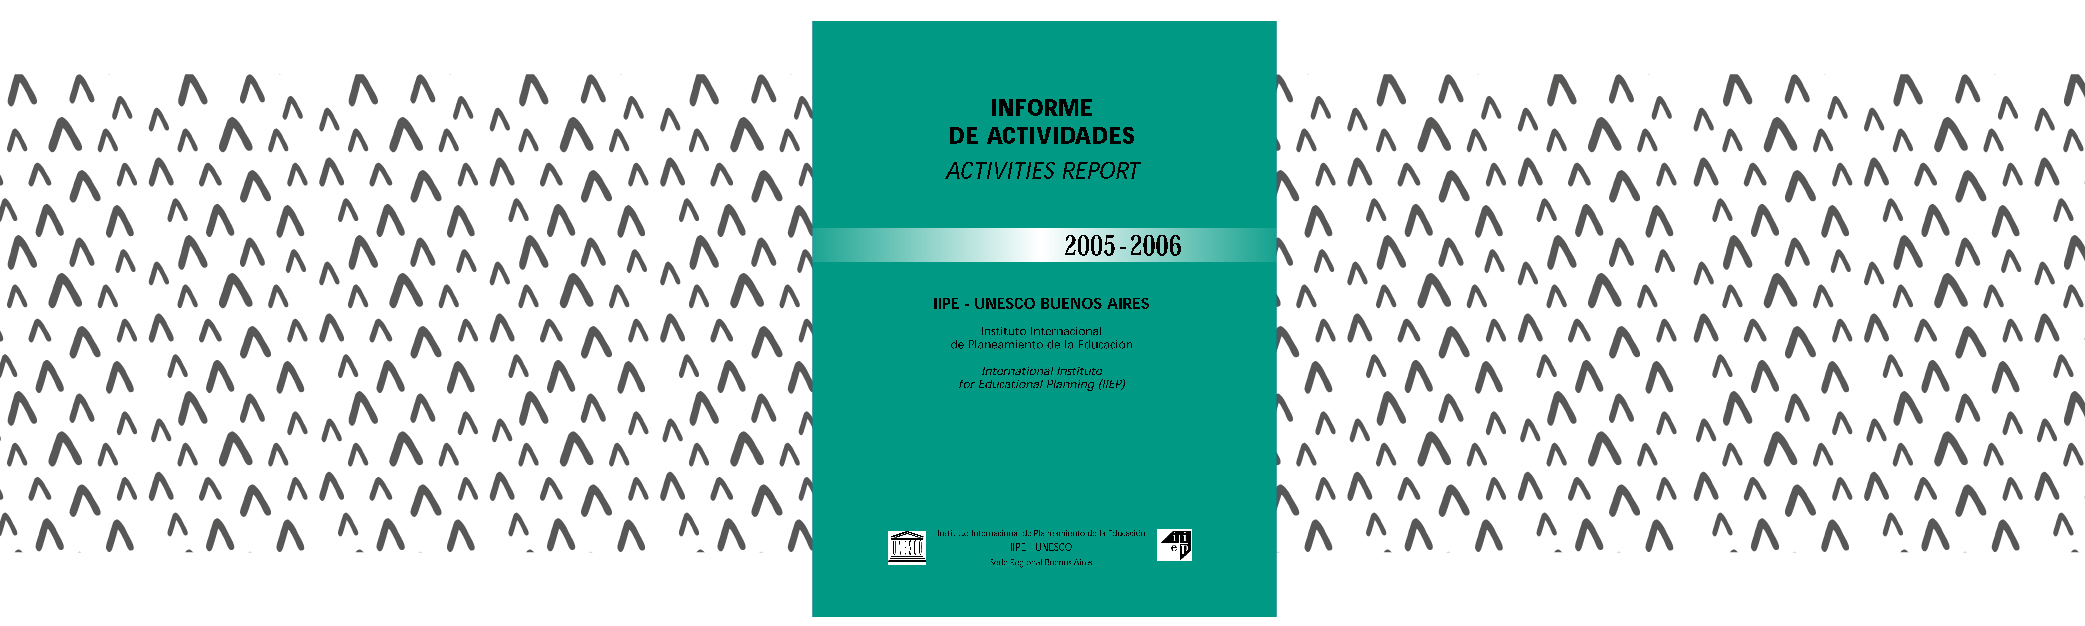 Informe de actividades 2005